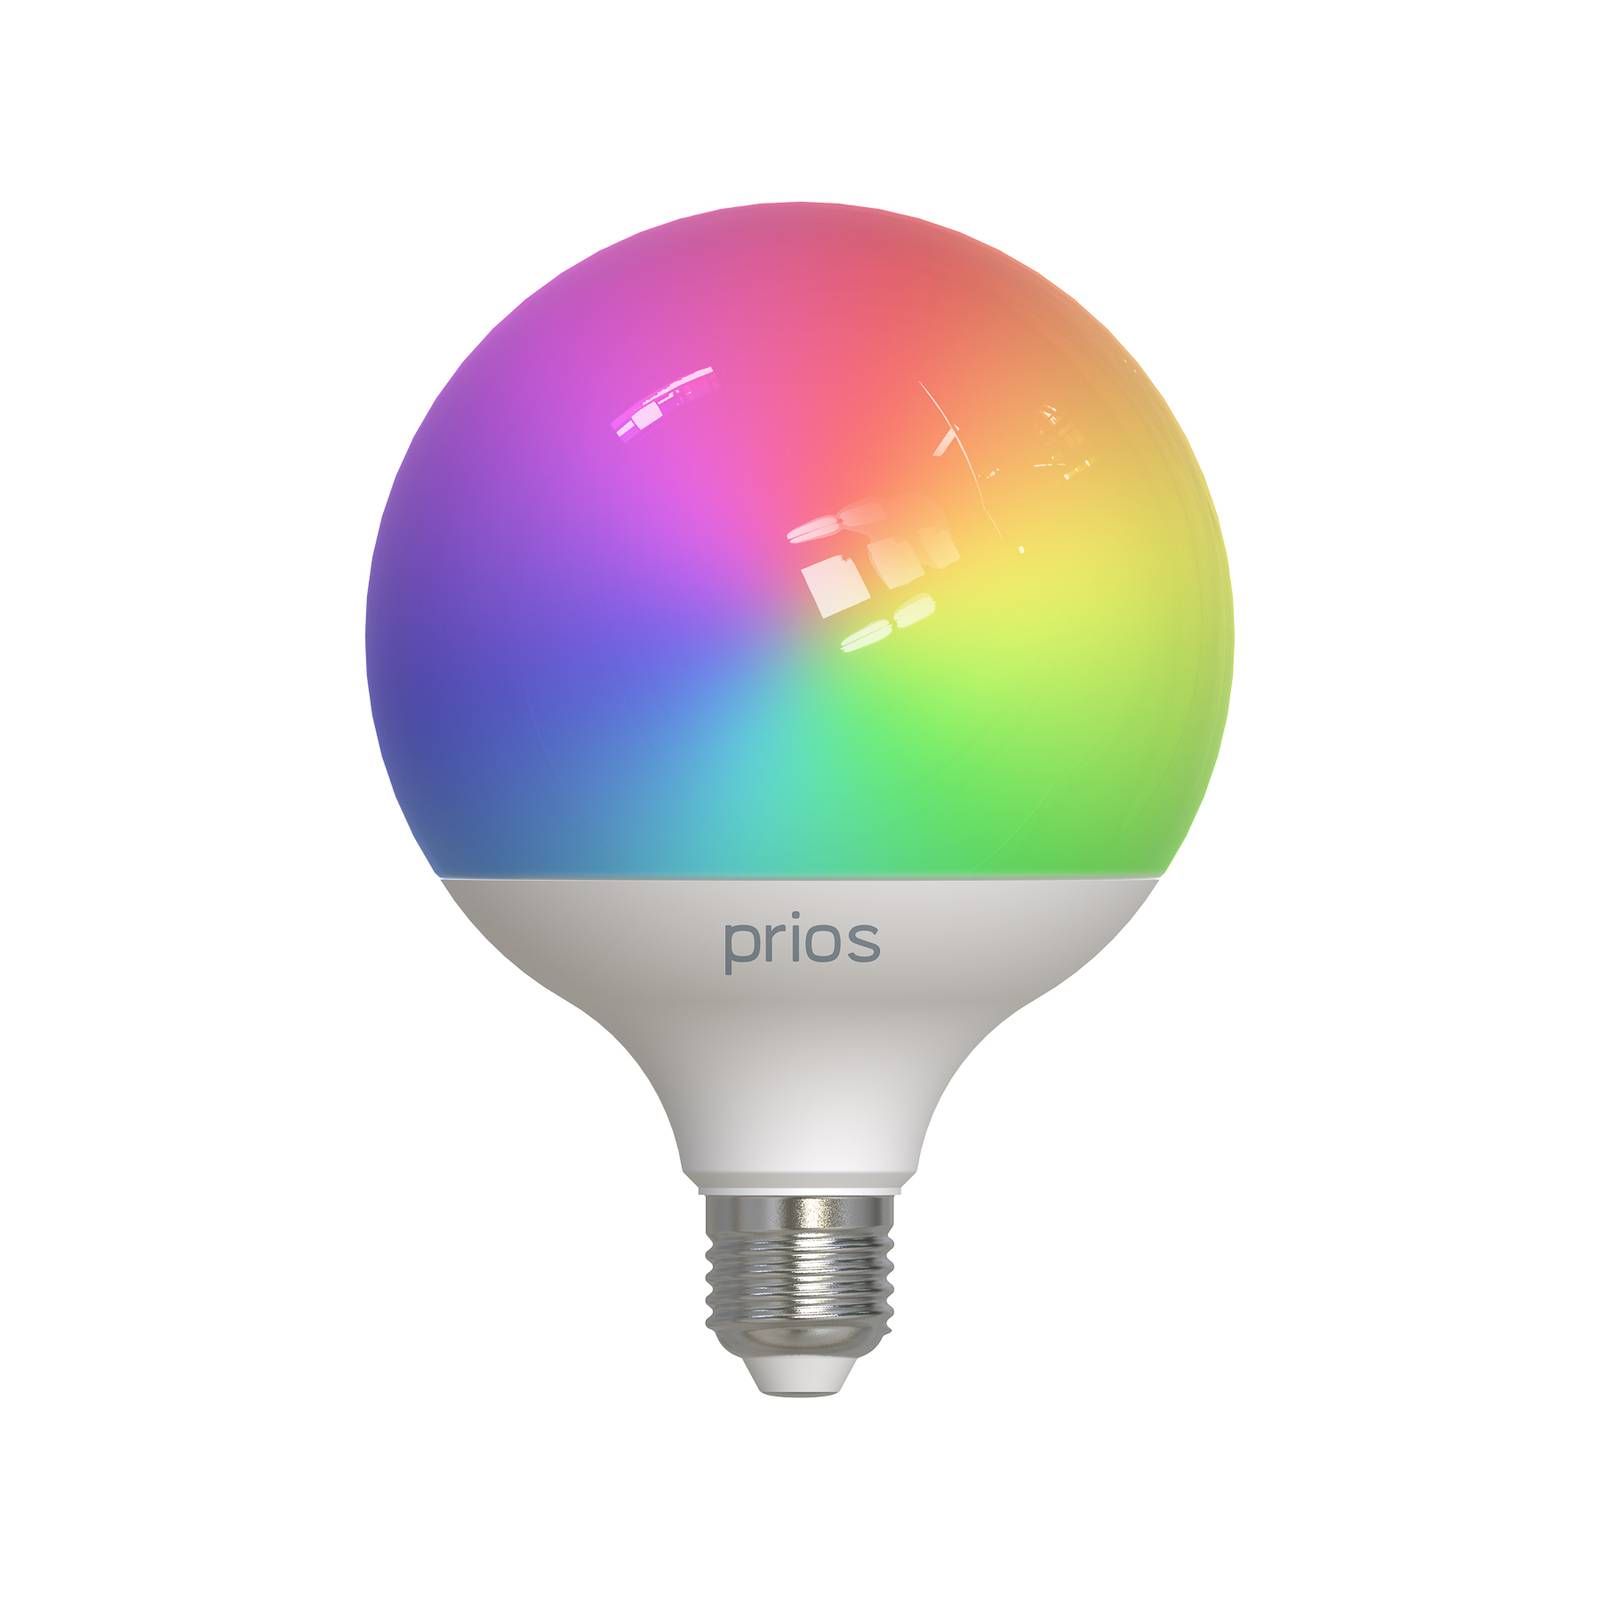 PRIOS Smart LED E27 G125 9W RGB WLAN matná tunable white, plast, hliník, E27, 9W, Energialuokka: F, P: 15.7 cm